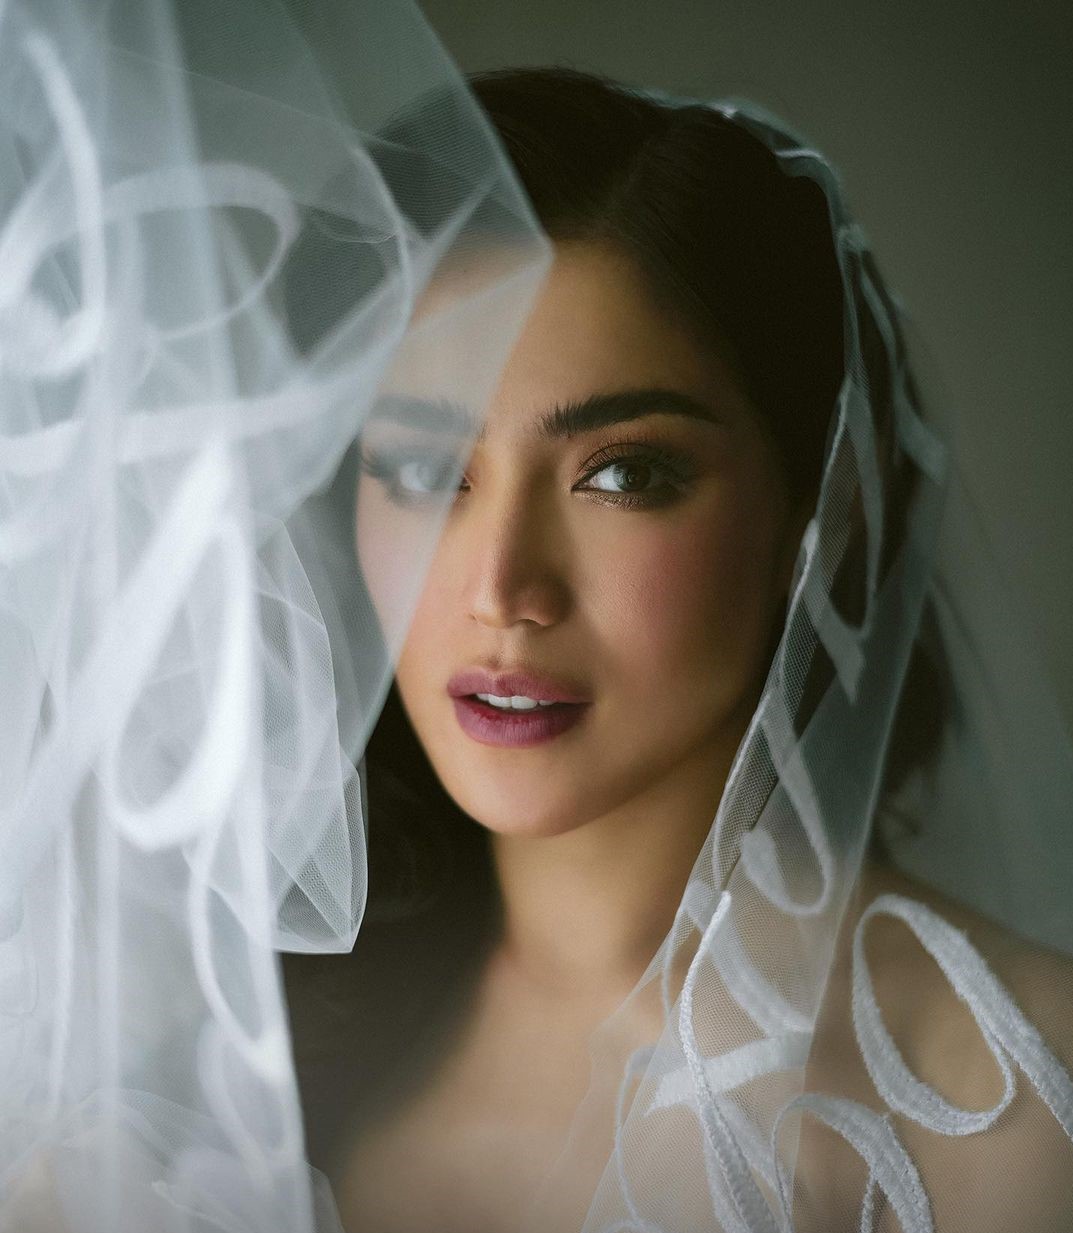 Makeup Jessica Iskandar di Hari Pernikahan: Flawless nan Simple